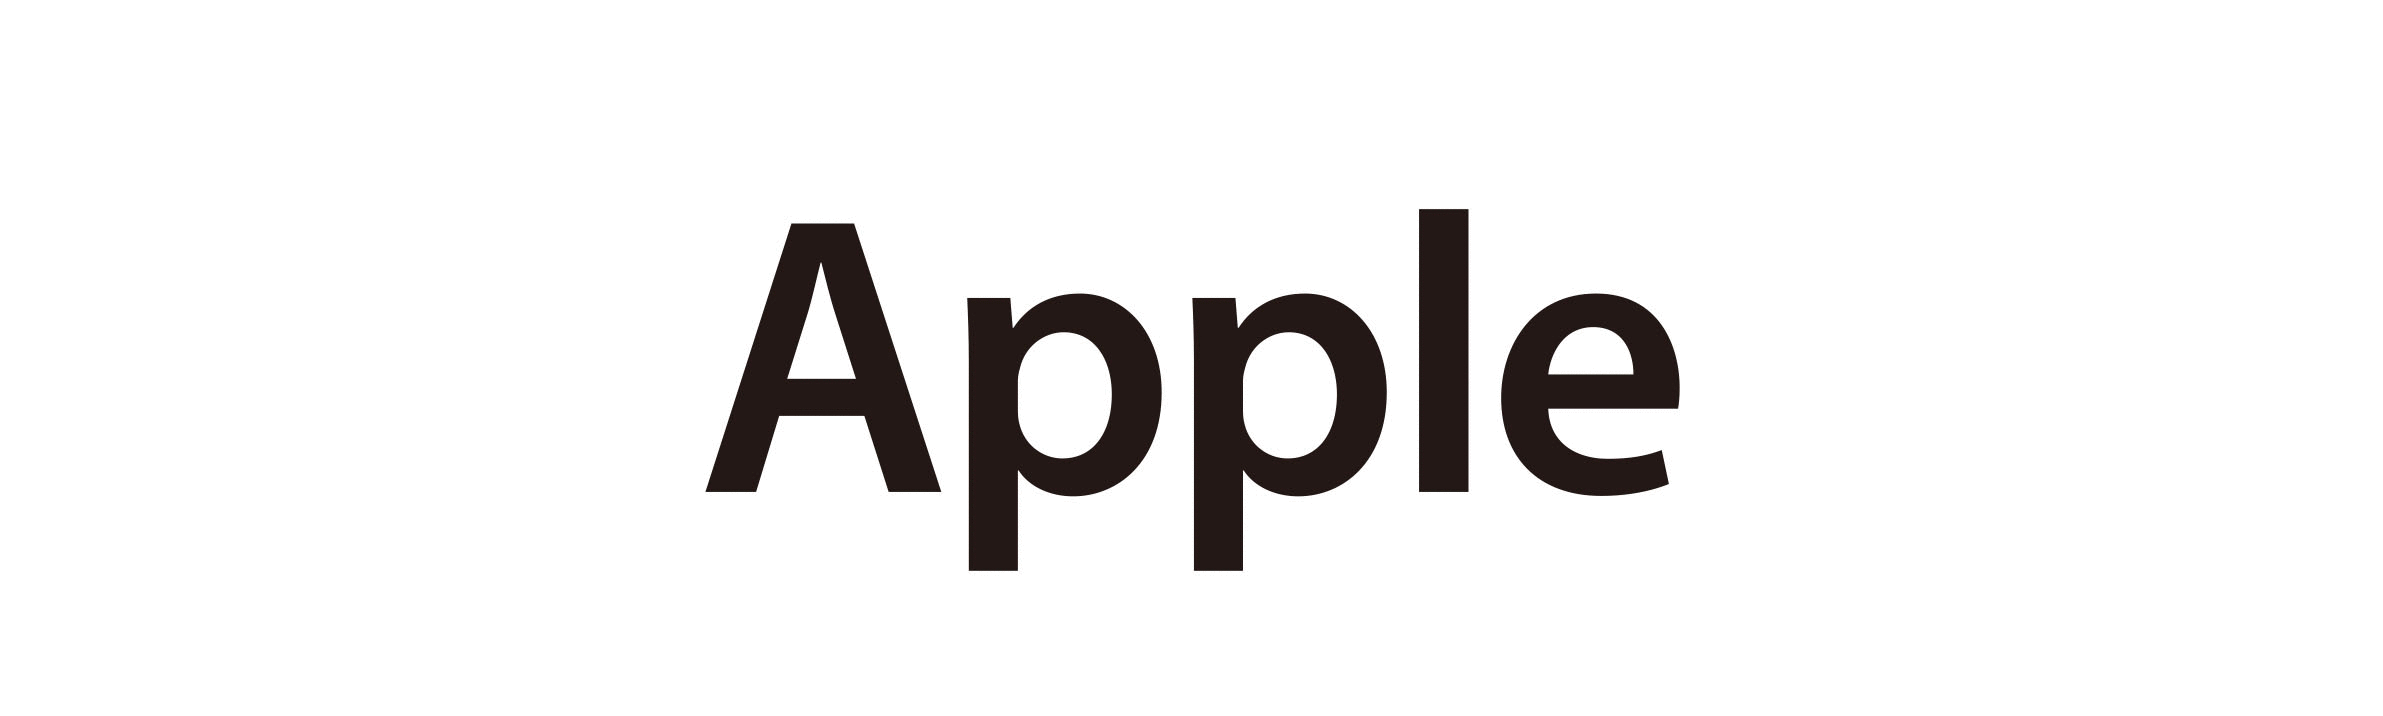 Appleアイコン